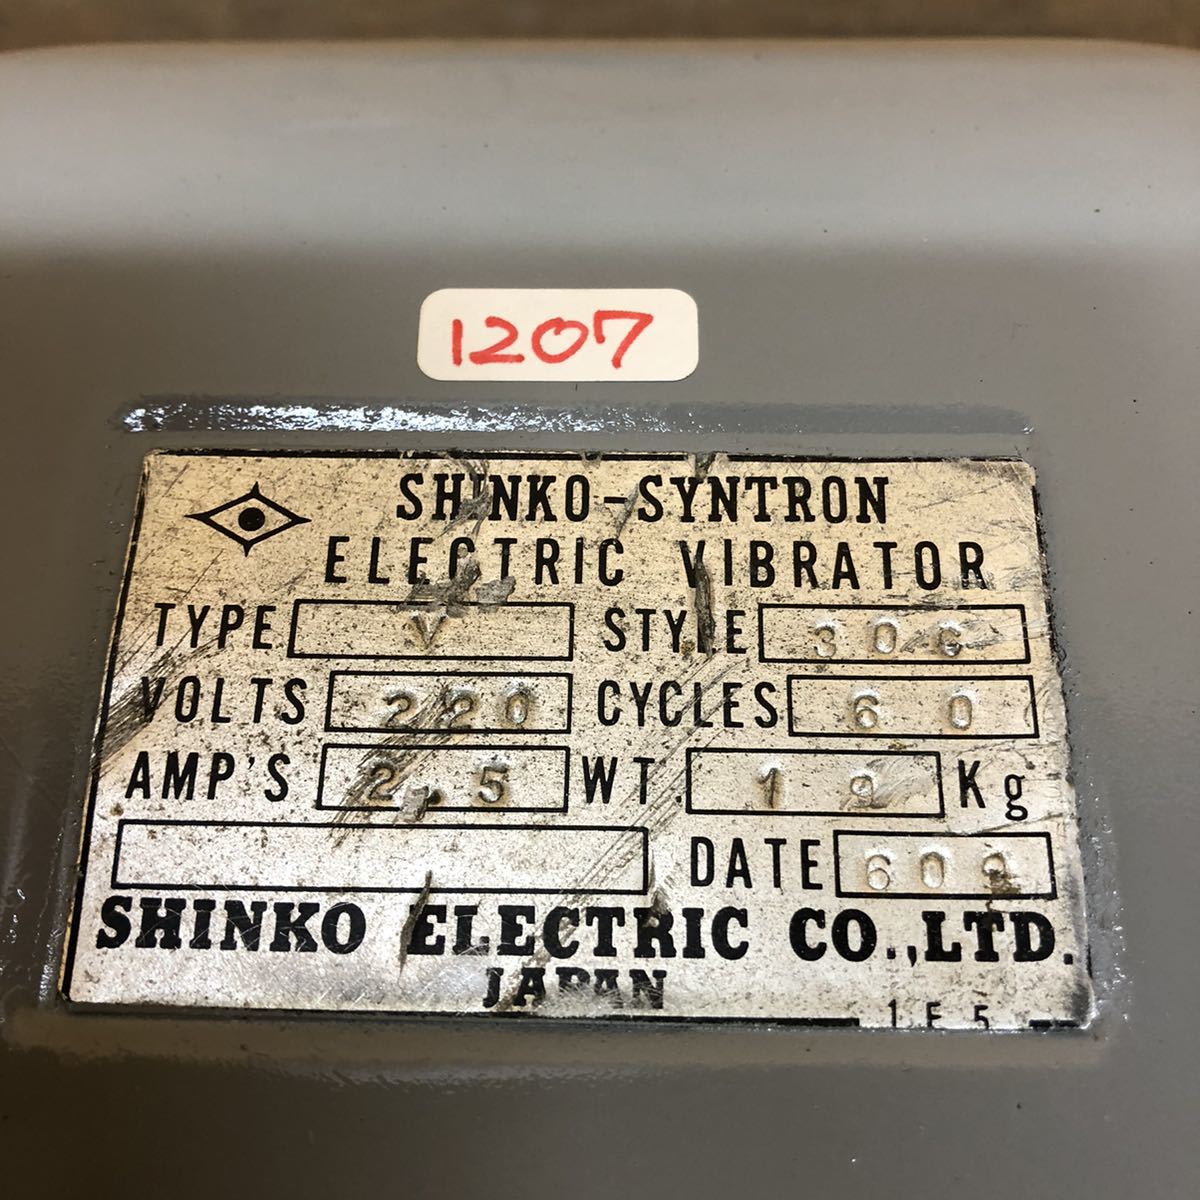 送料0 SHINKO vibrator TYPE(V) STYLE(300) 単相220V 60Hz 本体重量20kg(1207)_画像6